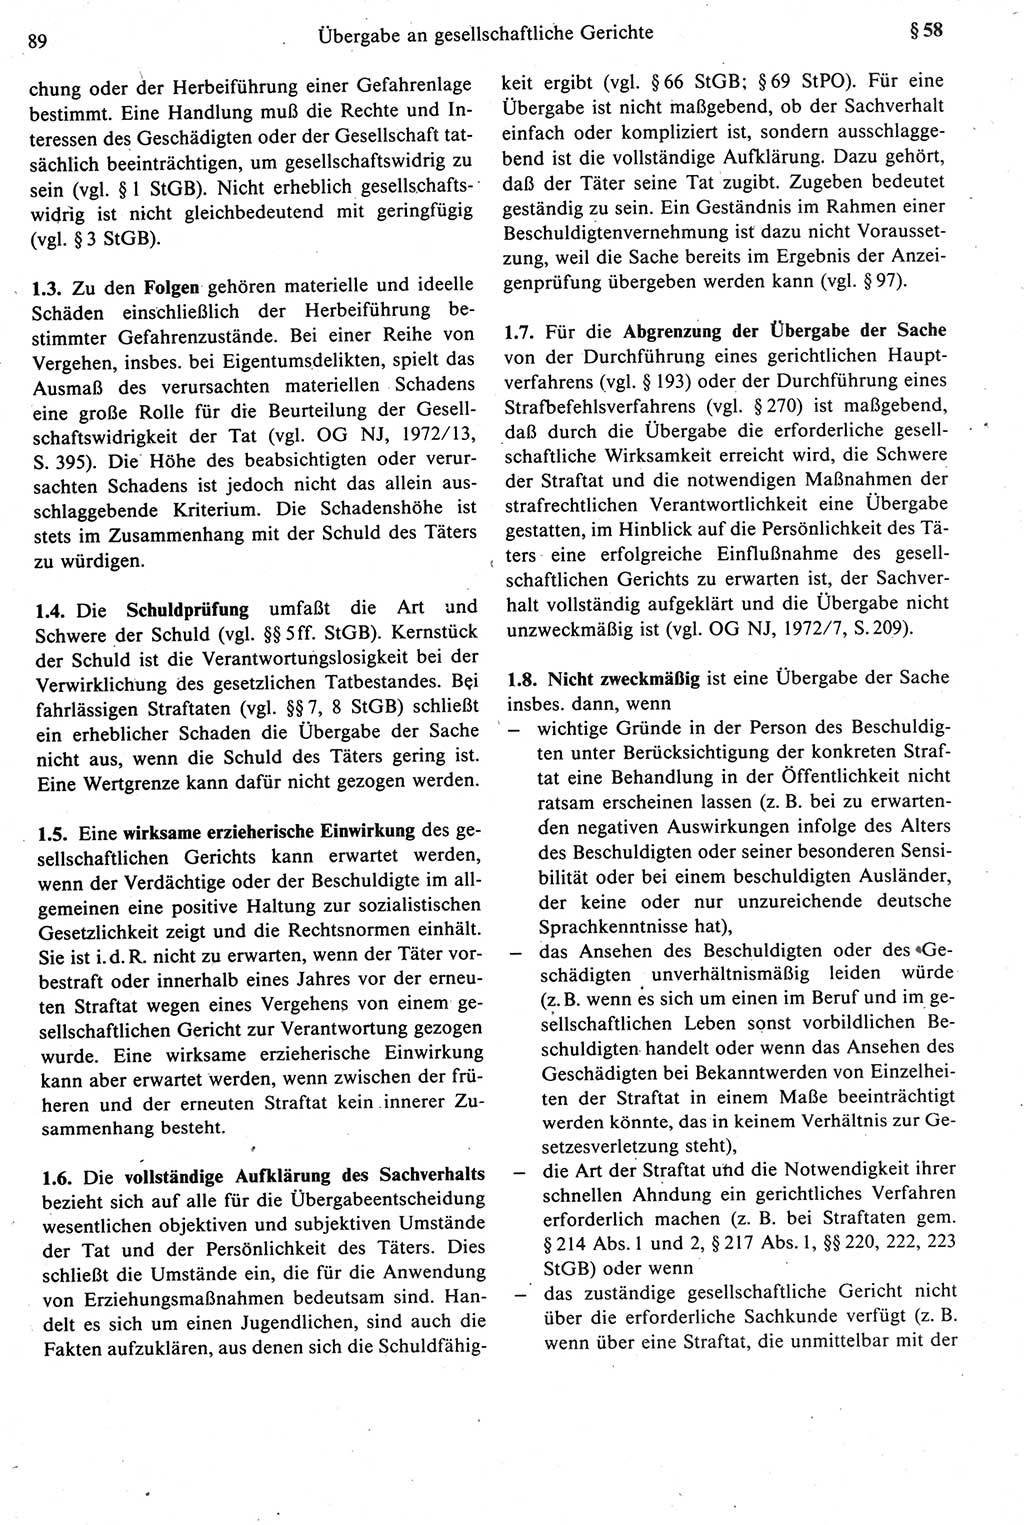 Strafprozeßrecht der DDR [Deutsche Demokratische Republik], Kommentar zur Strafprozeßordnung (StPO) 1987, Seite 89 (Strafprozeßr. DDR Komm. StPO 1987, S. 89)